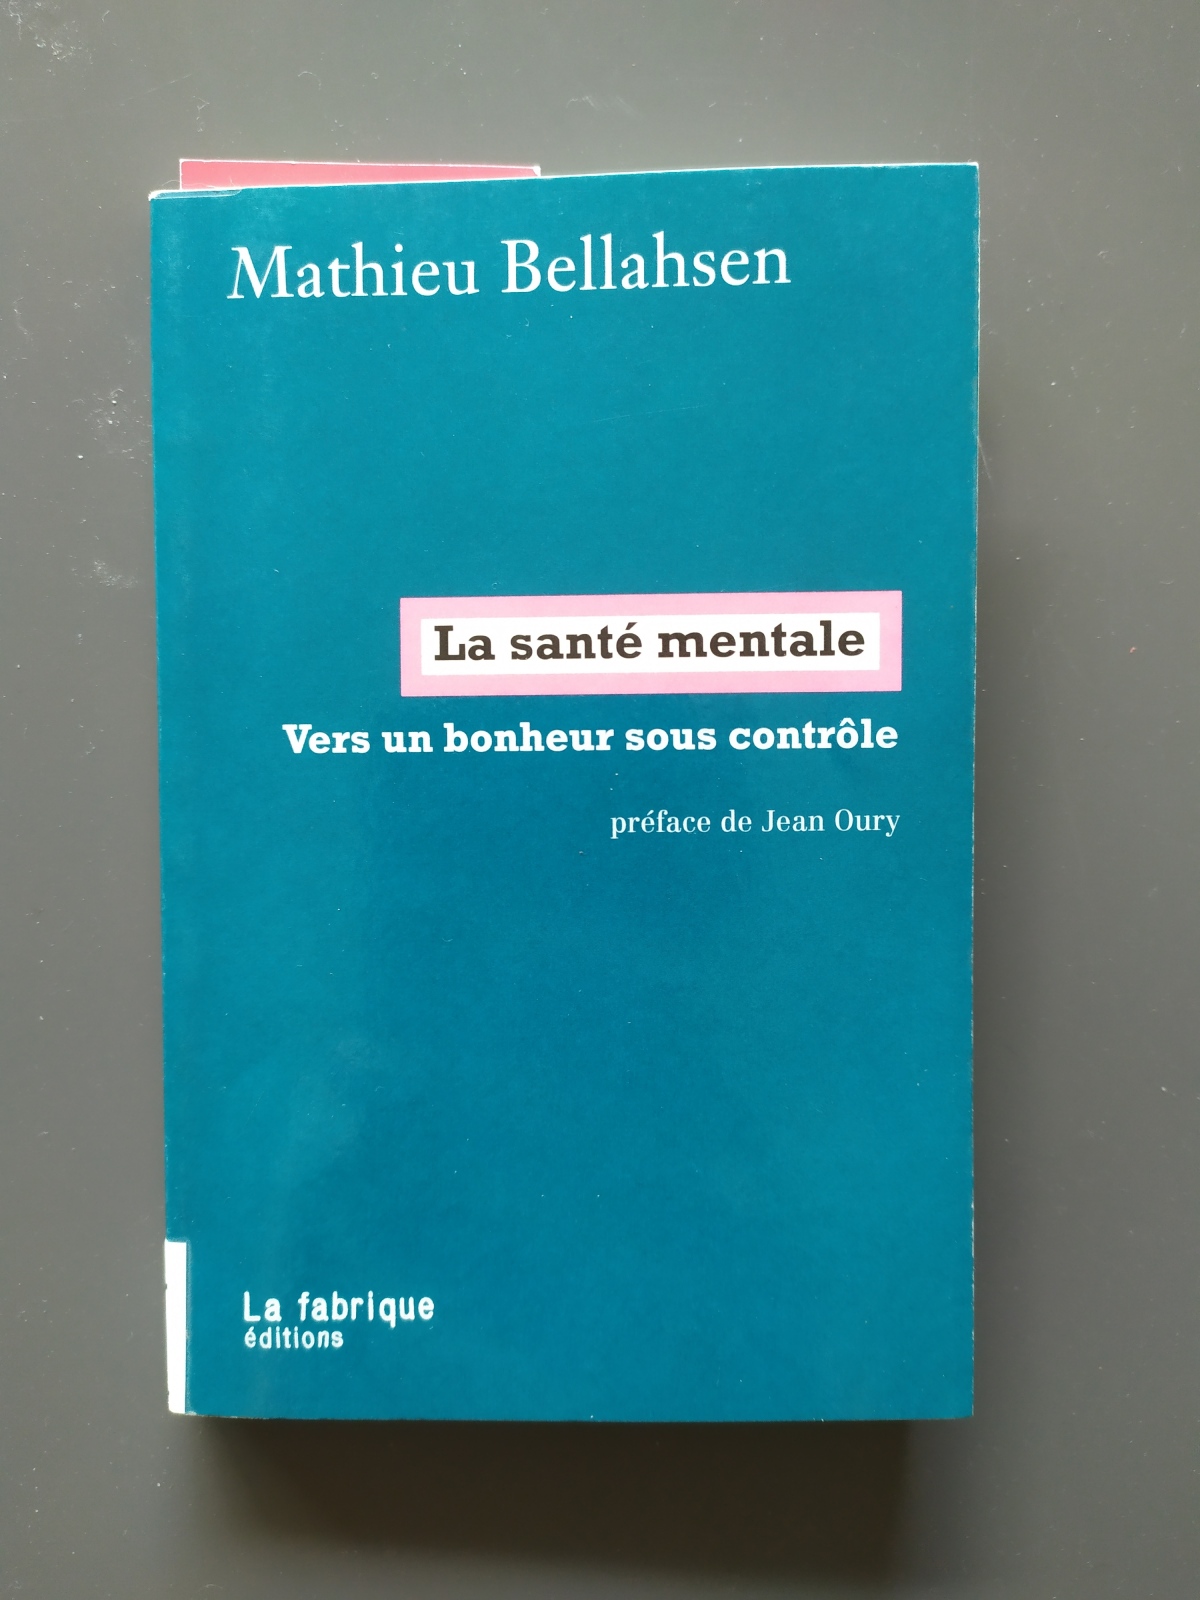 La santé mentale / Mathieu Bellahsen